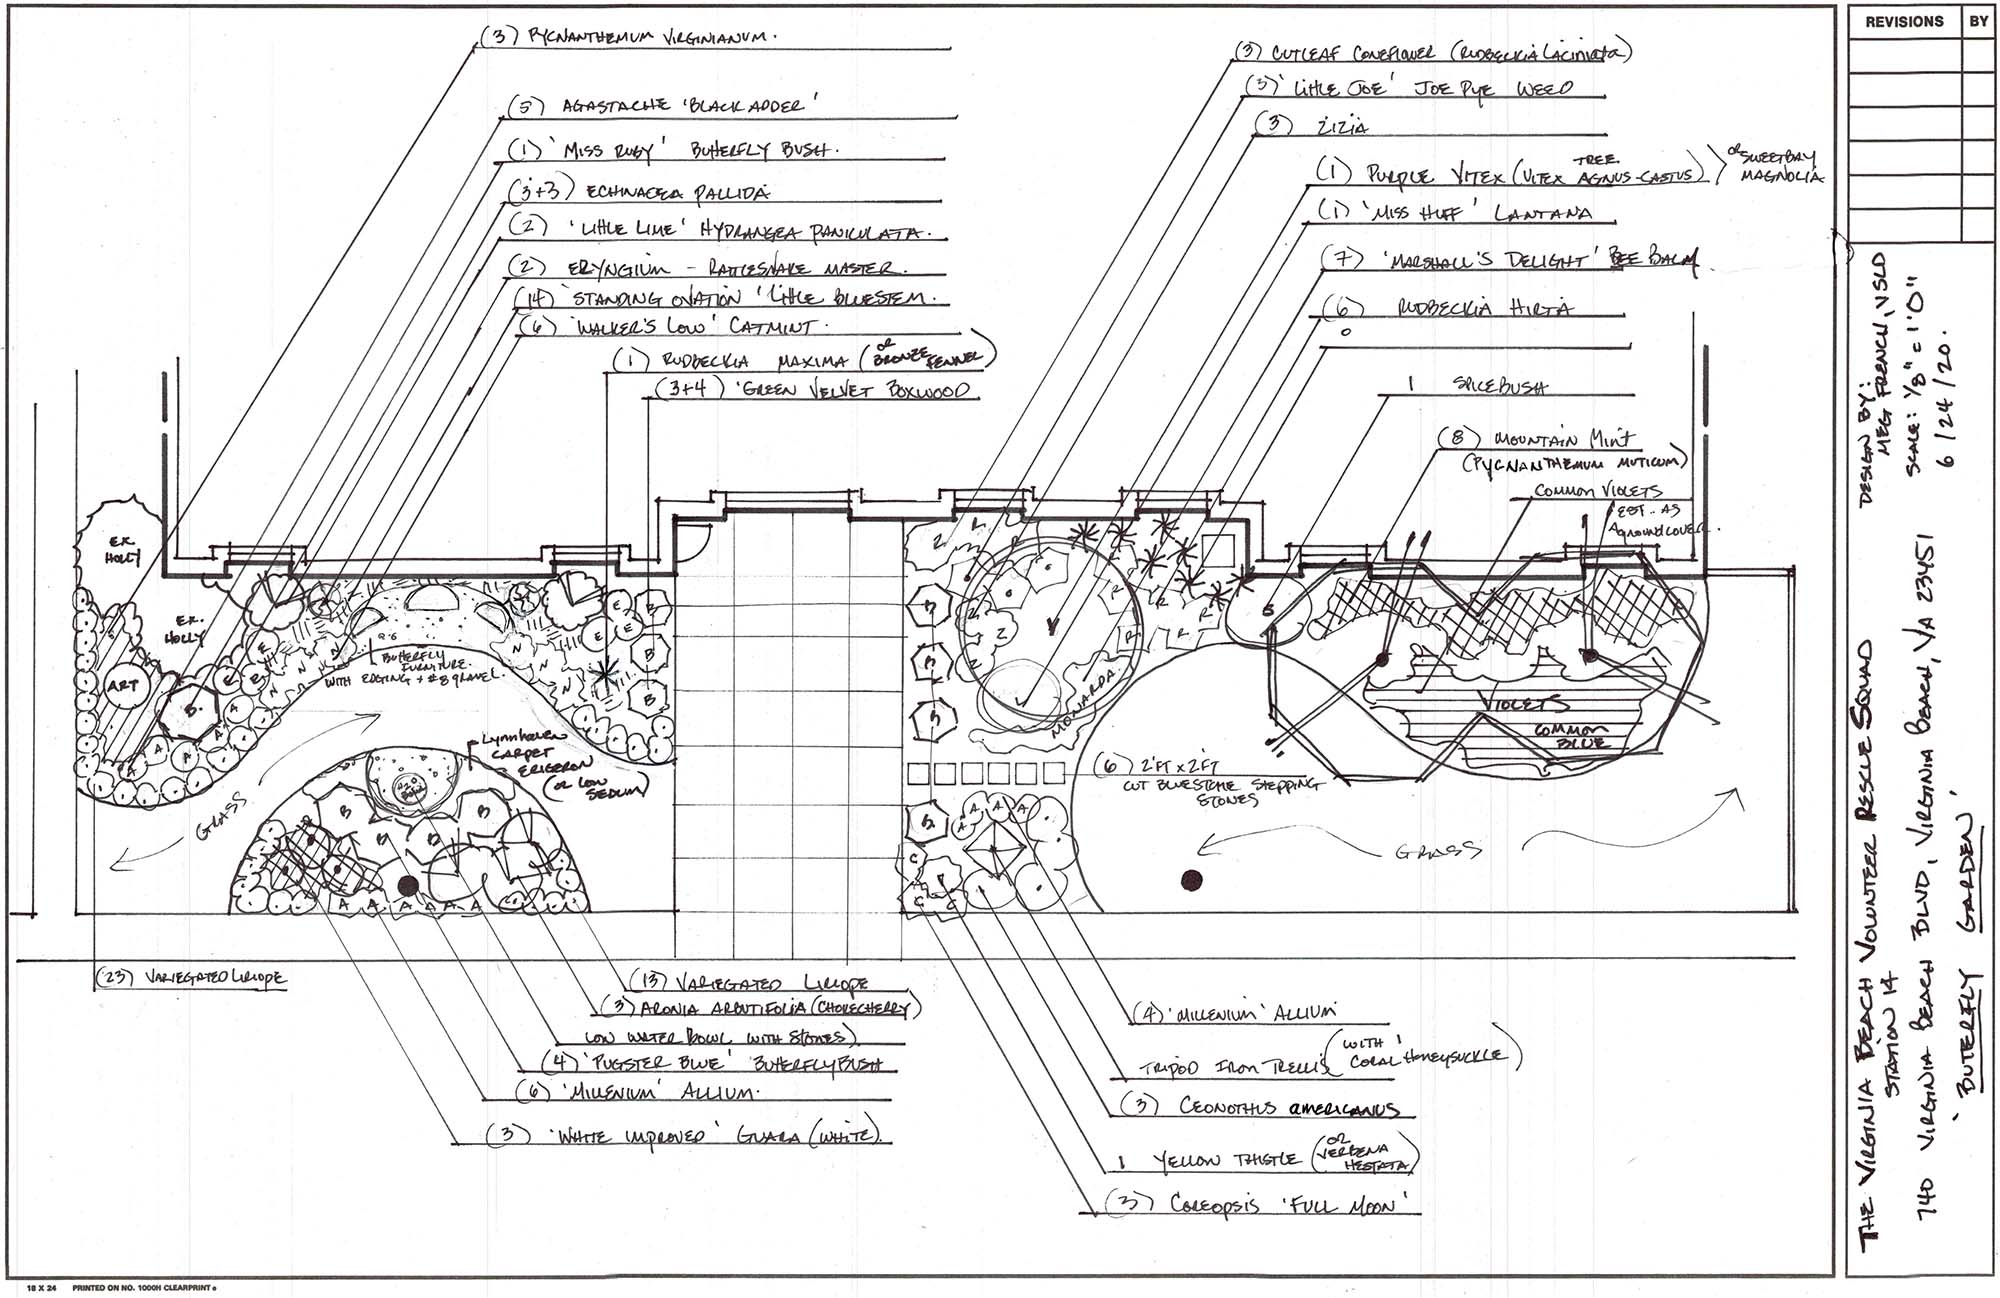 Hand drawn schematics of the VBVRS Butterfly Garden Design-Smaller